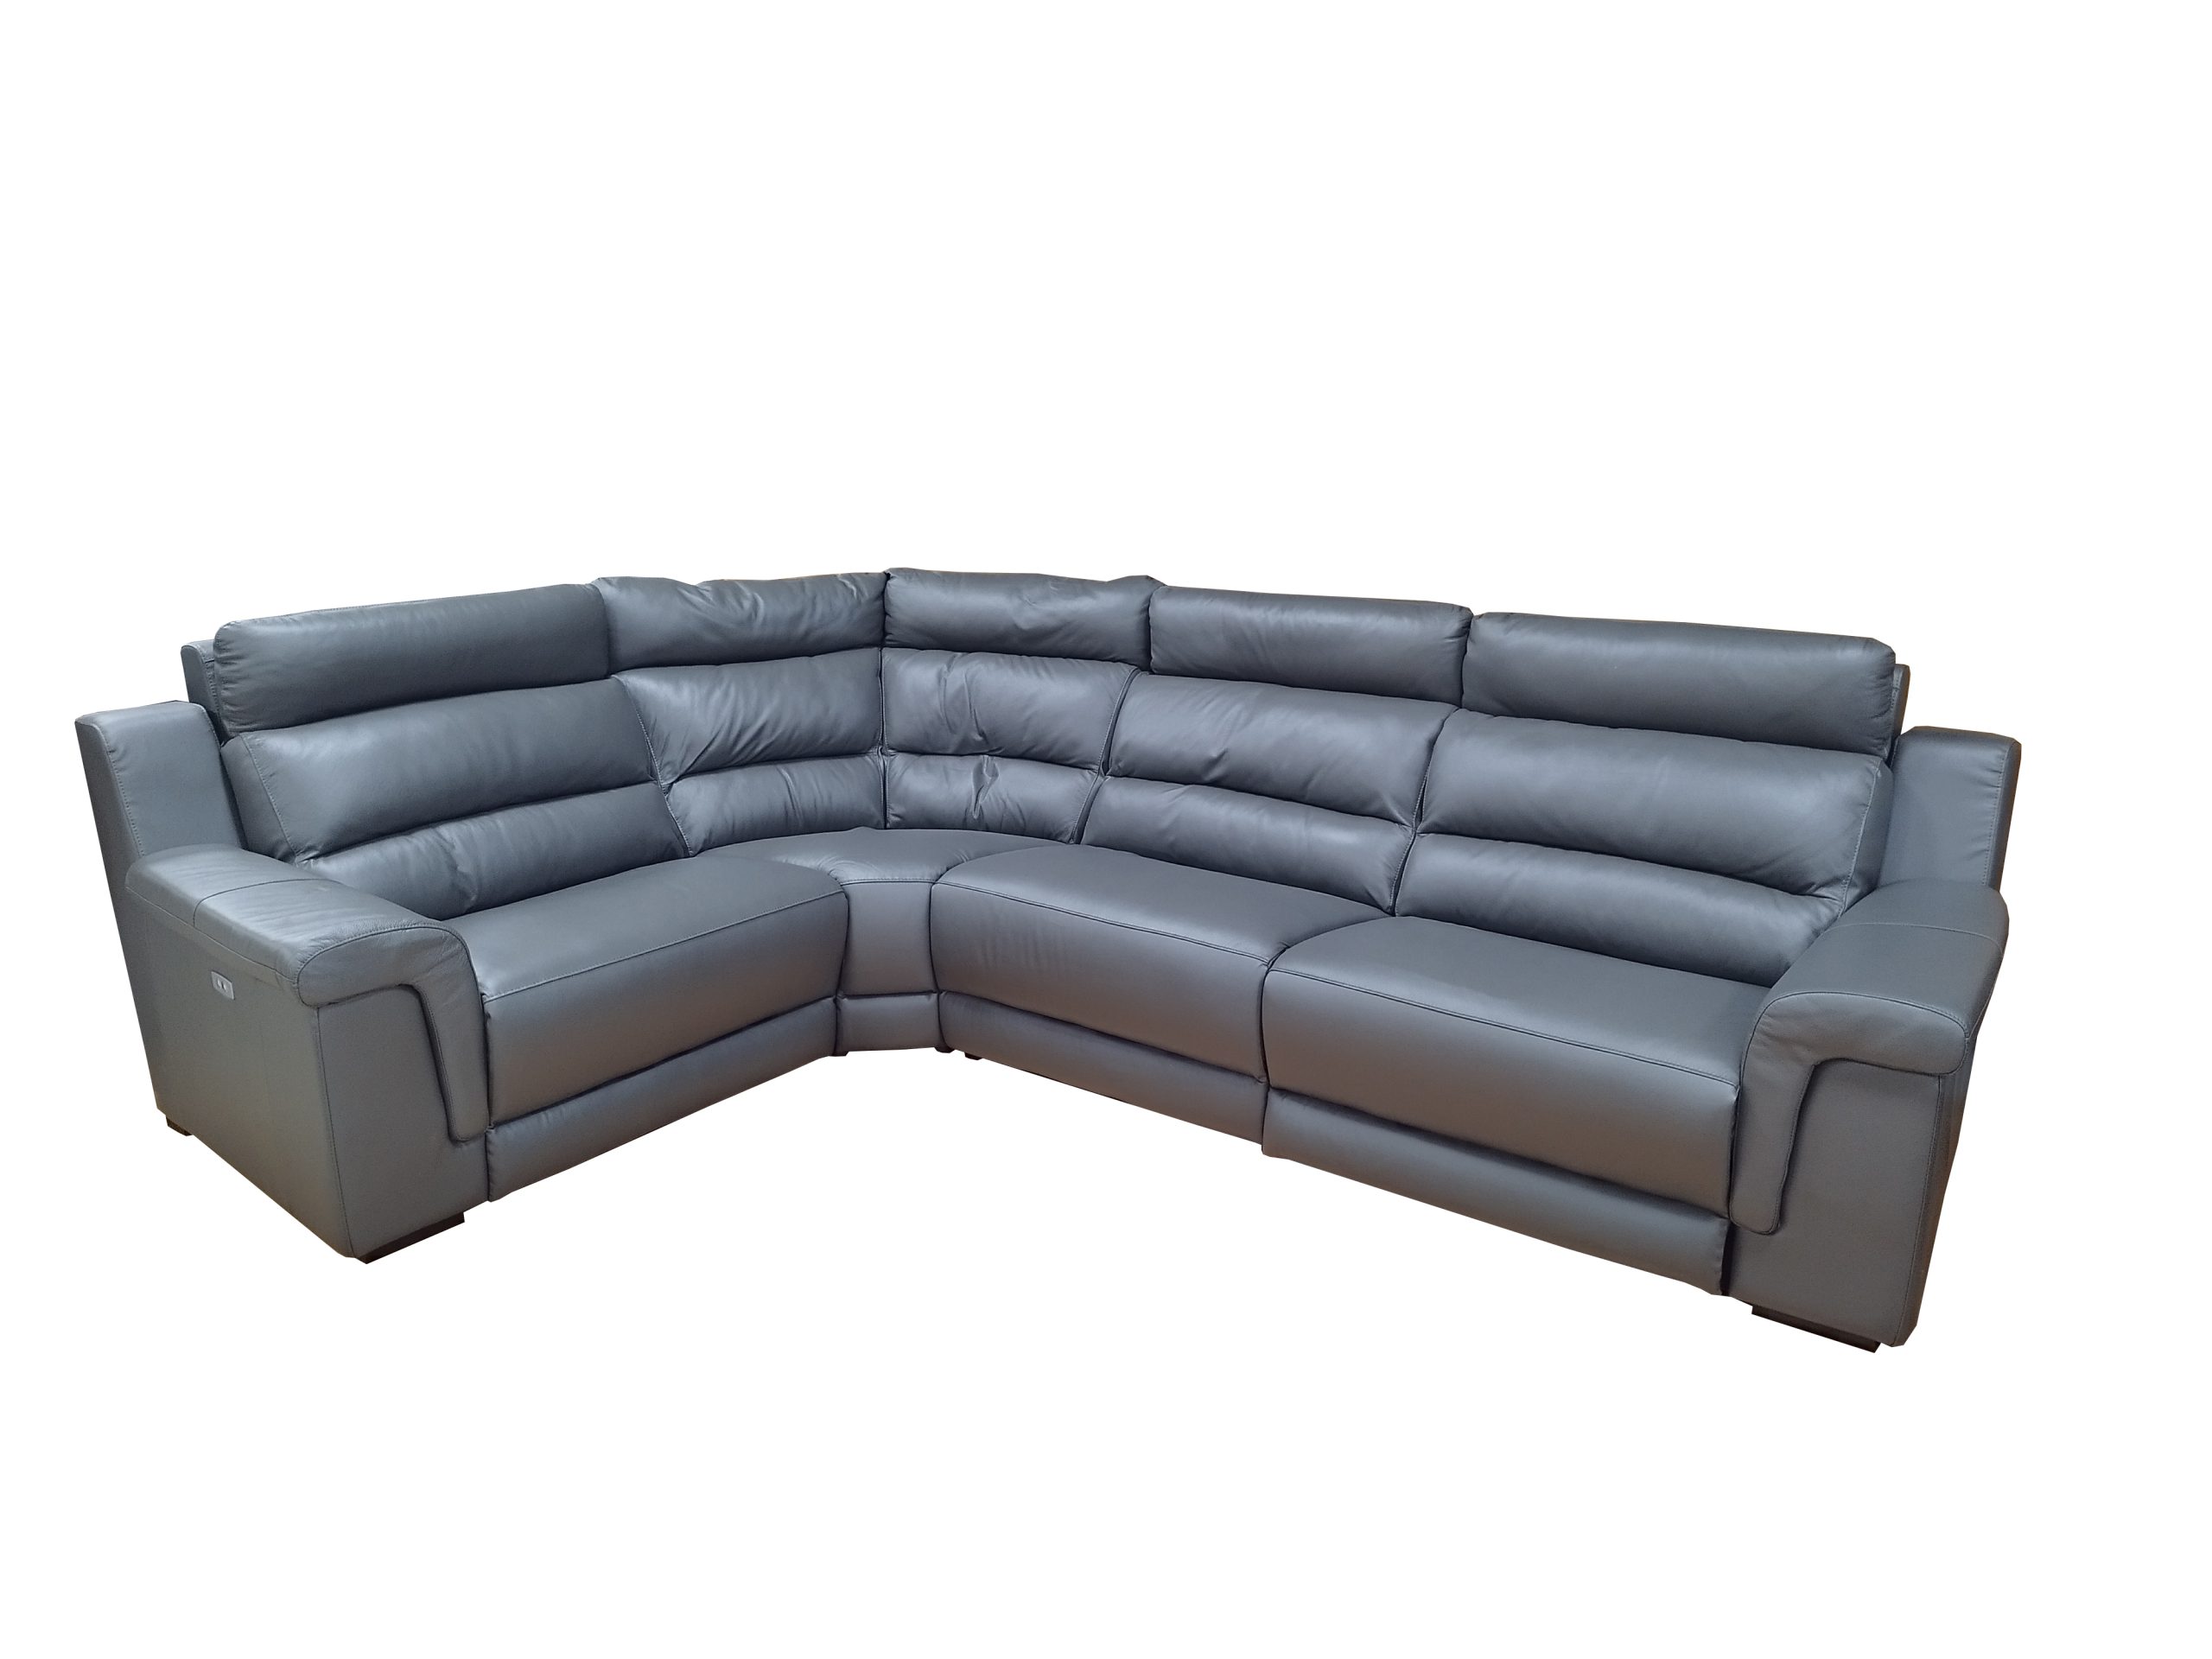 Stūra ādas dīvāns ar relaksācijas funkciju D99